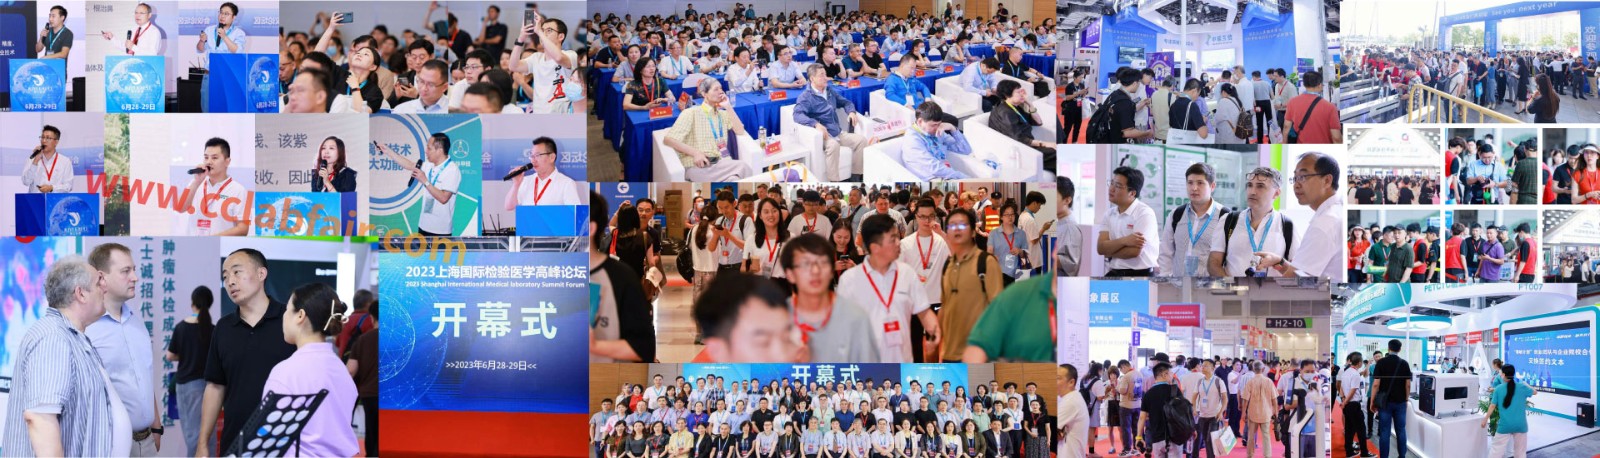 2023上海国际检验医学及体外诊断试剂展览会于6月28日在上海开幕